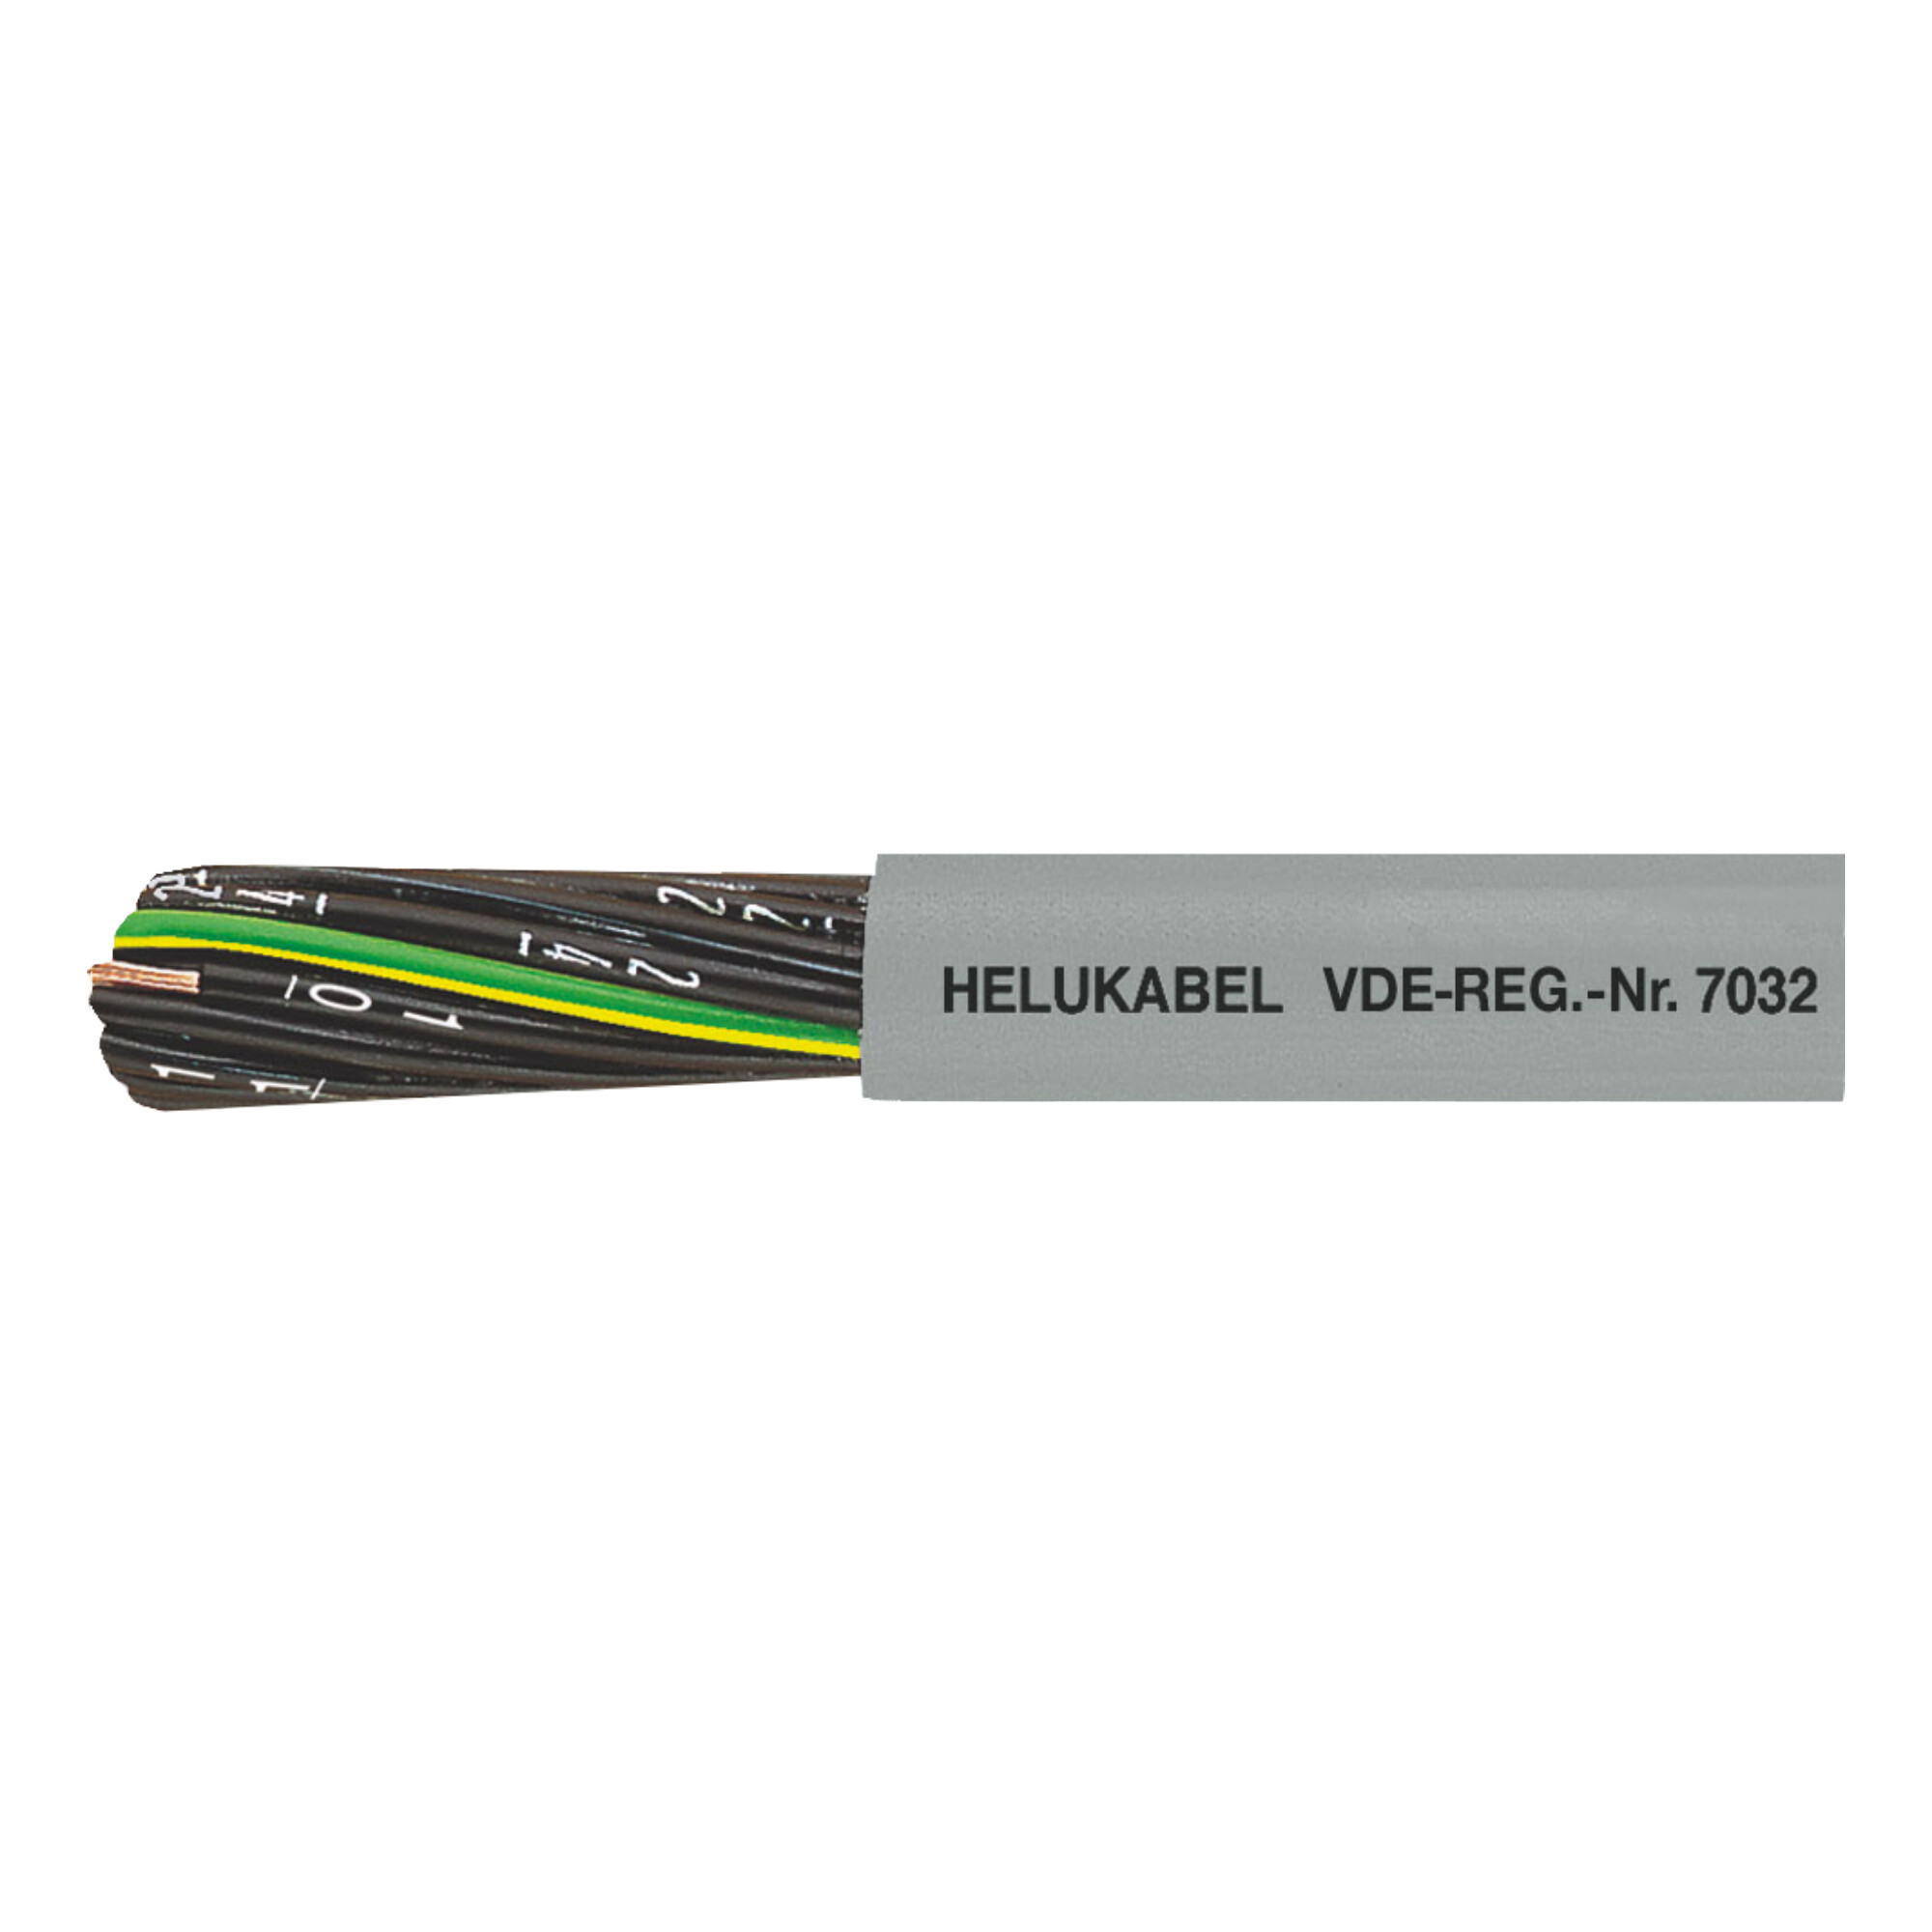 30-10012H0500 JZ-500 PVC buitenmantel en genummerde aders, incl. groen-geel.
Zonder groen/gele ader = serie OZ-500